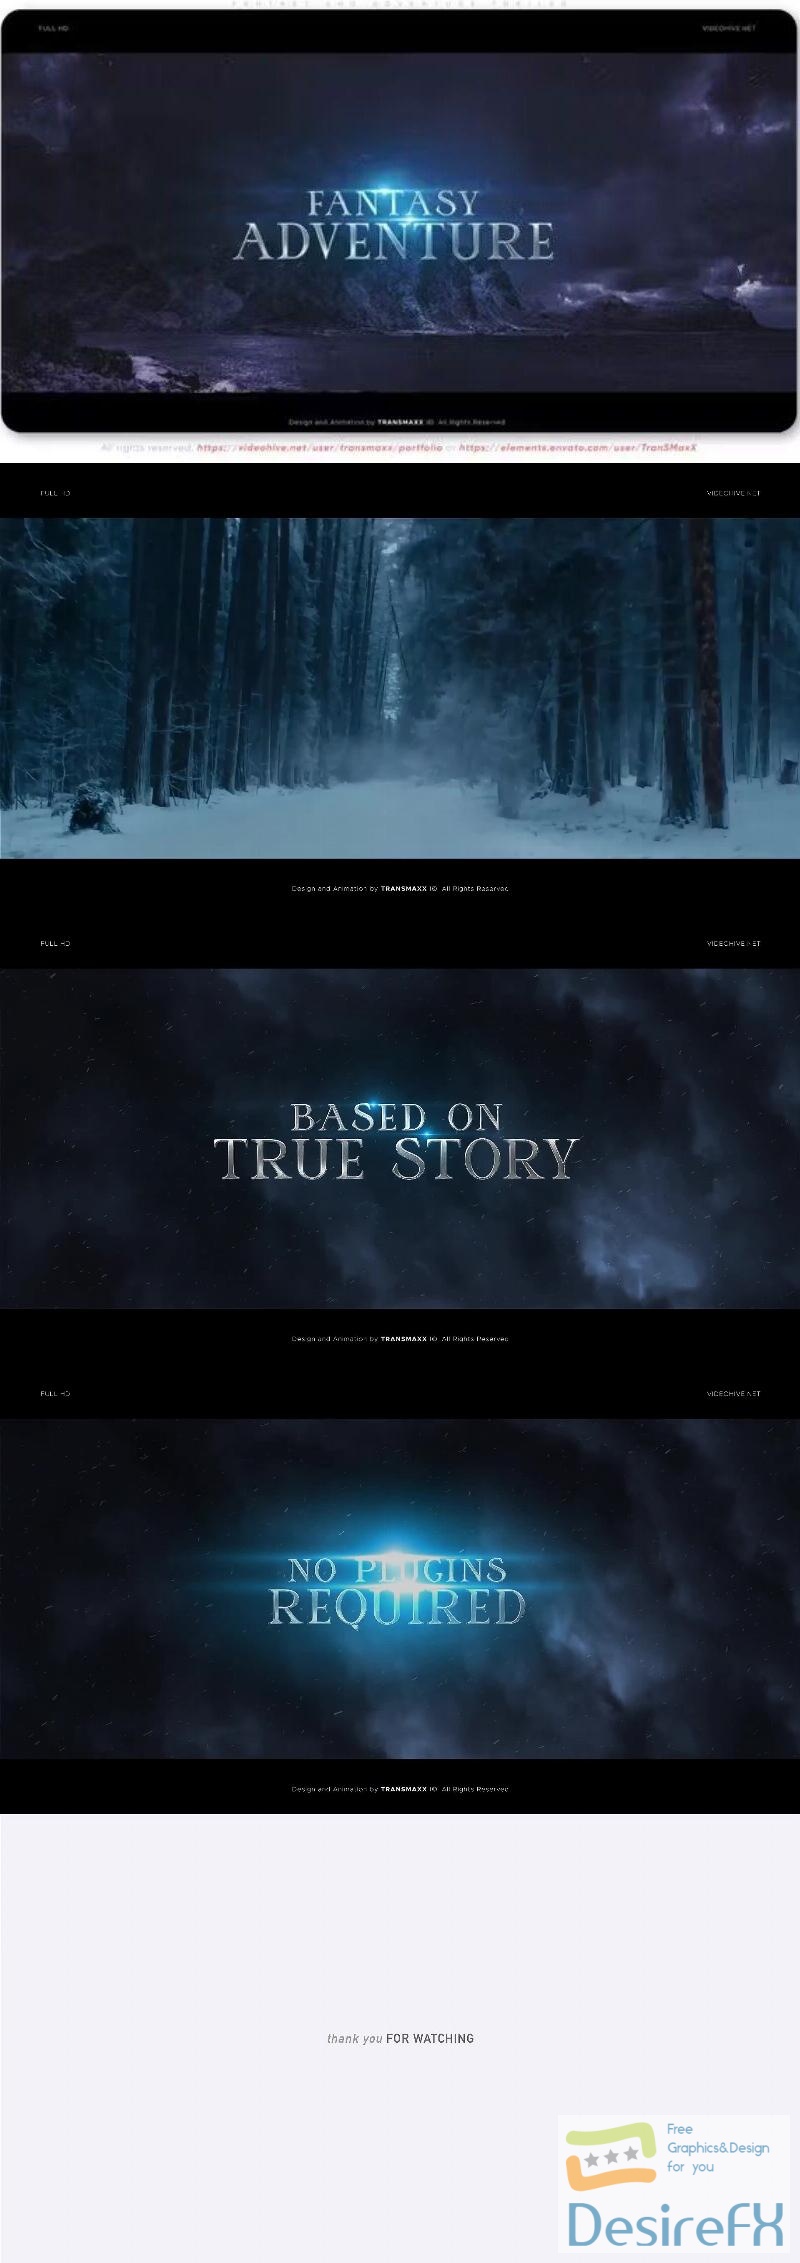 Videohive Fantasy and Adventure Trailer 46912056